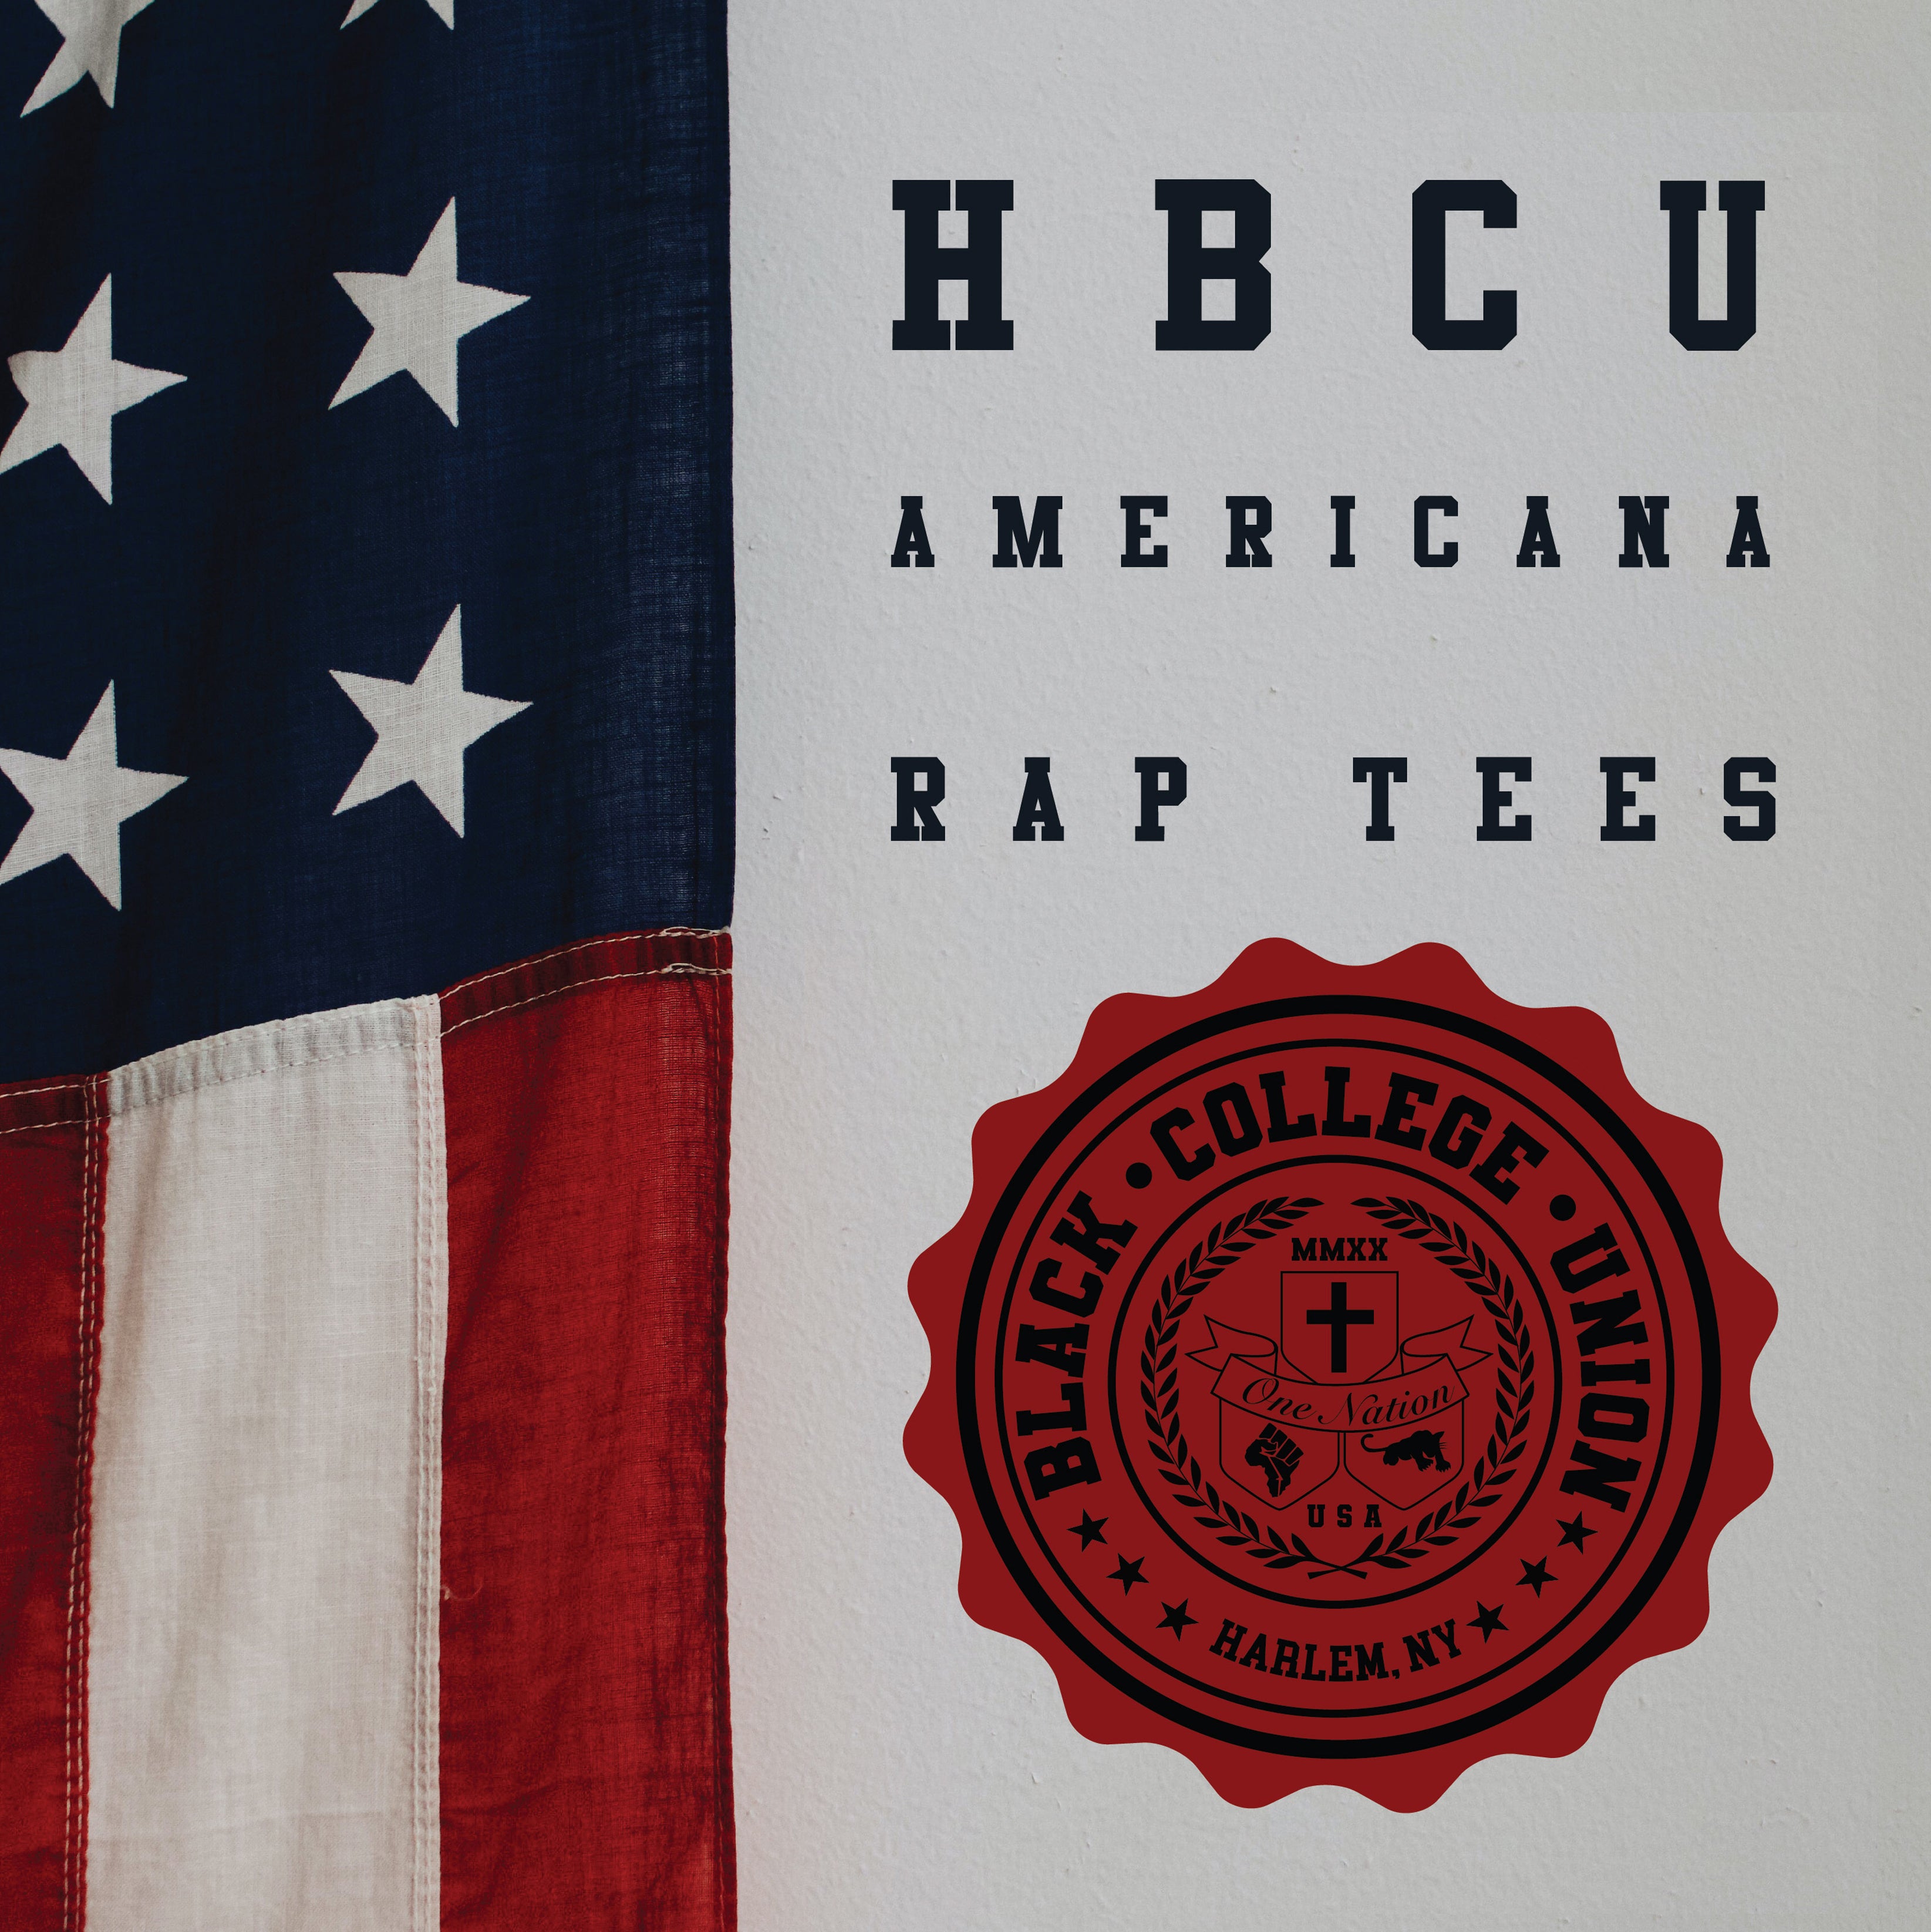 BCU X Champion Original HBCU Americana Rap Tee - Chicago State